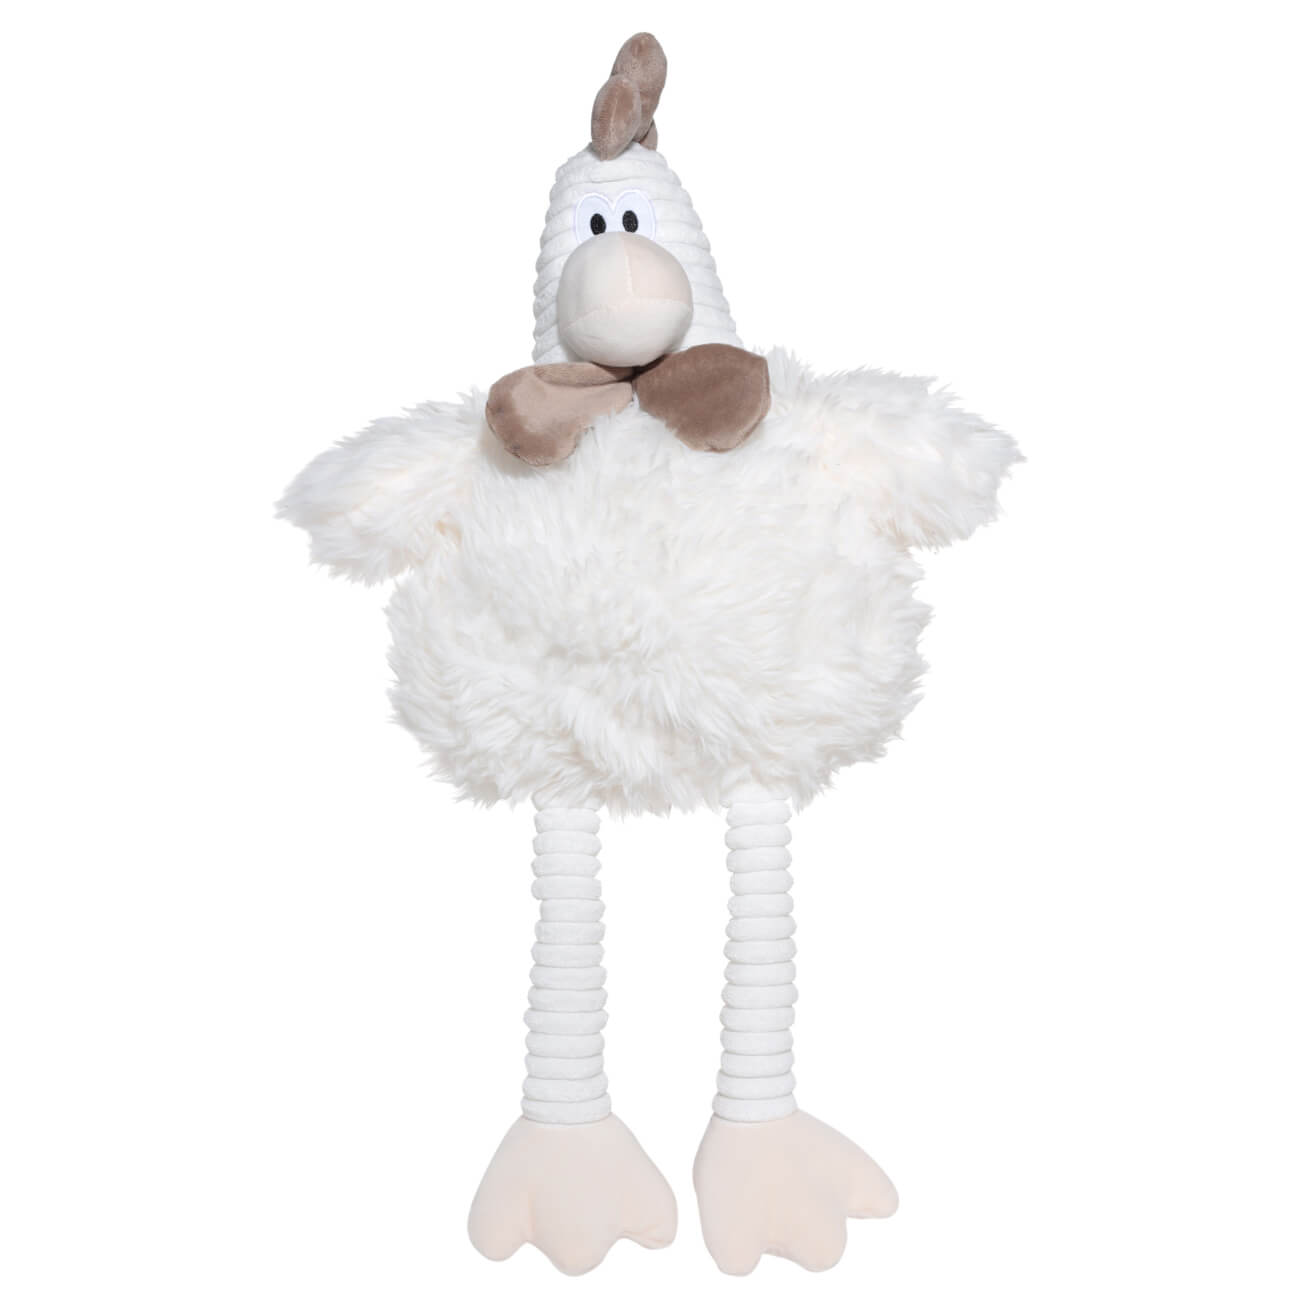 Игрушка, 55 см, мягкая, полиэстер, молочная, Петух, Rooster игрушка 63 см мягкая полиэстер молочная гусь goose